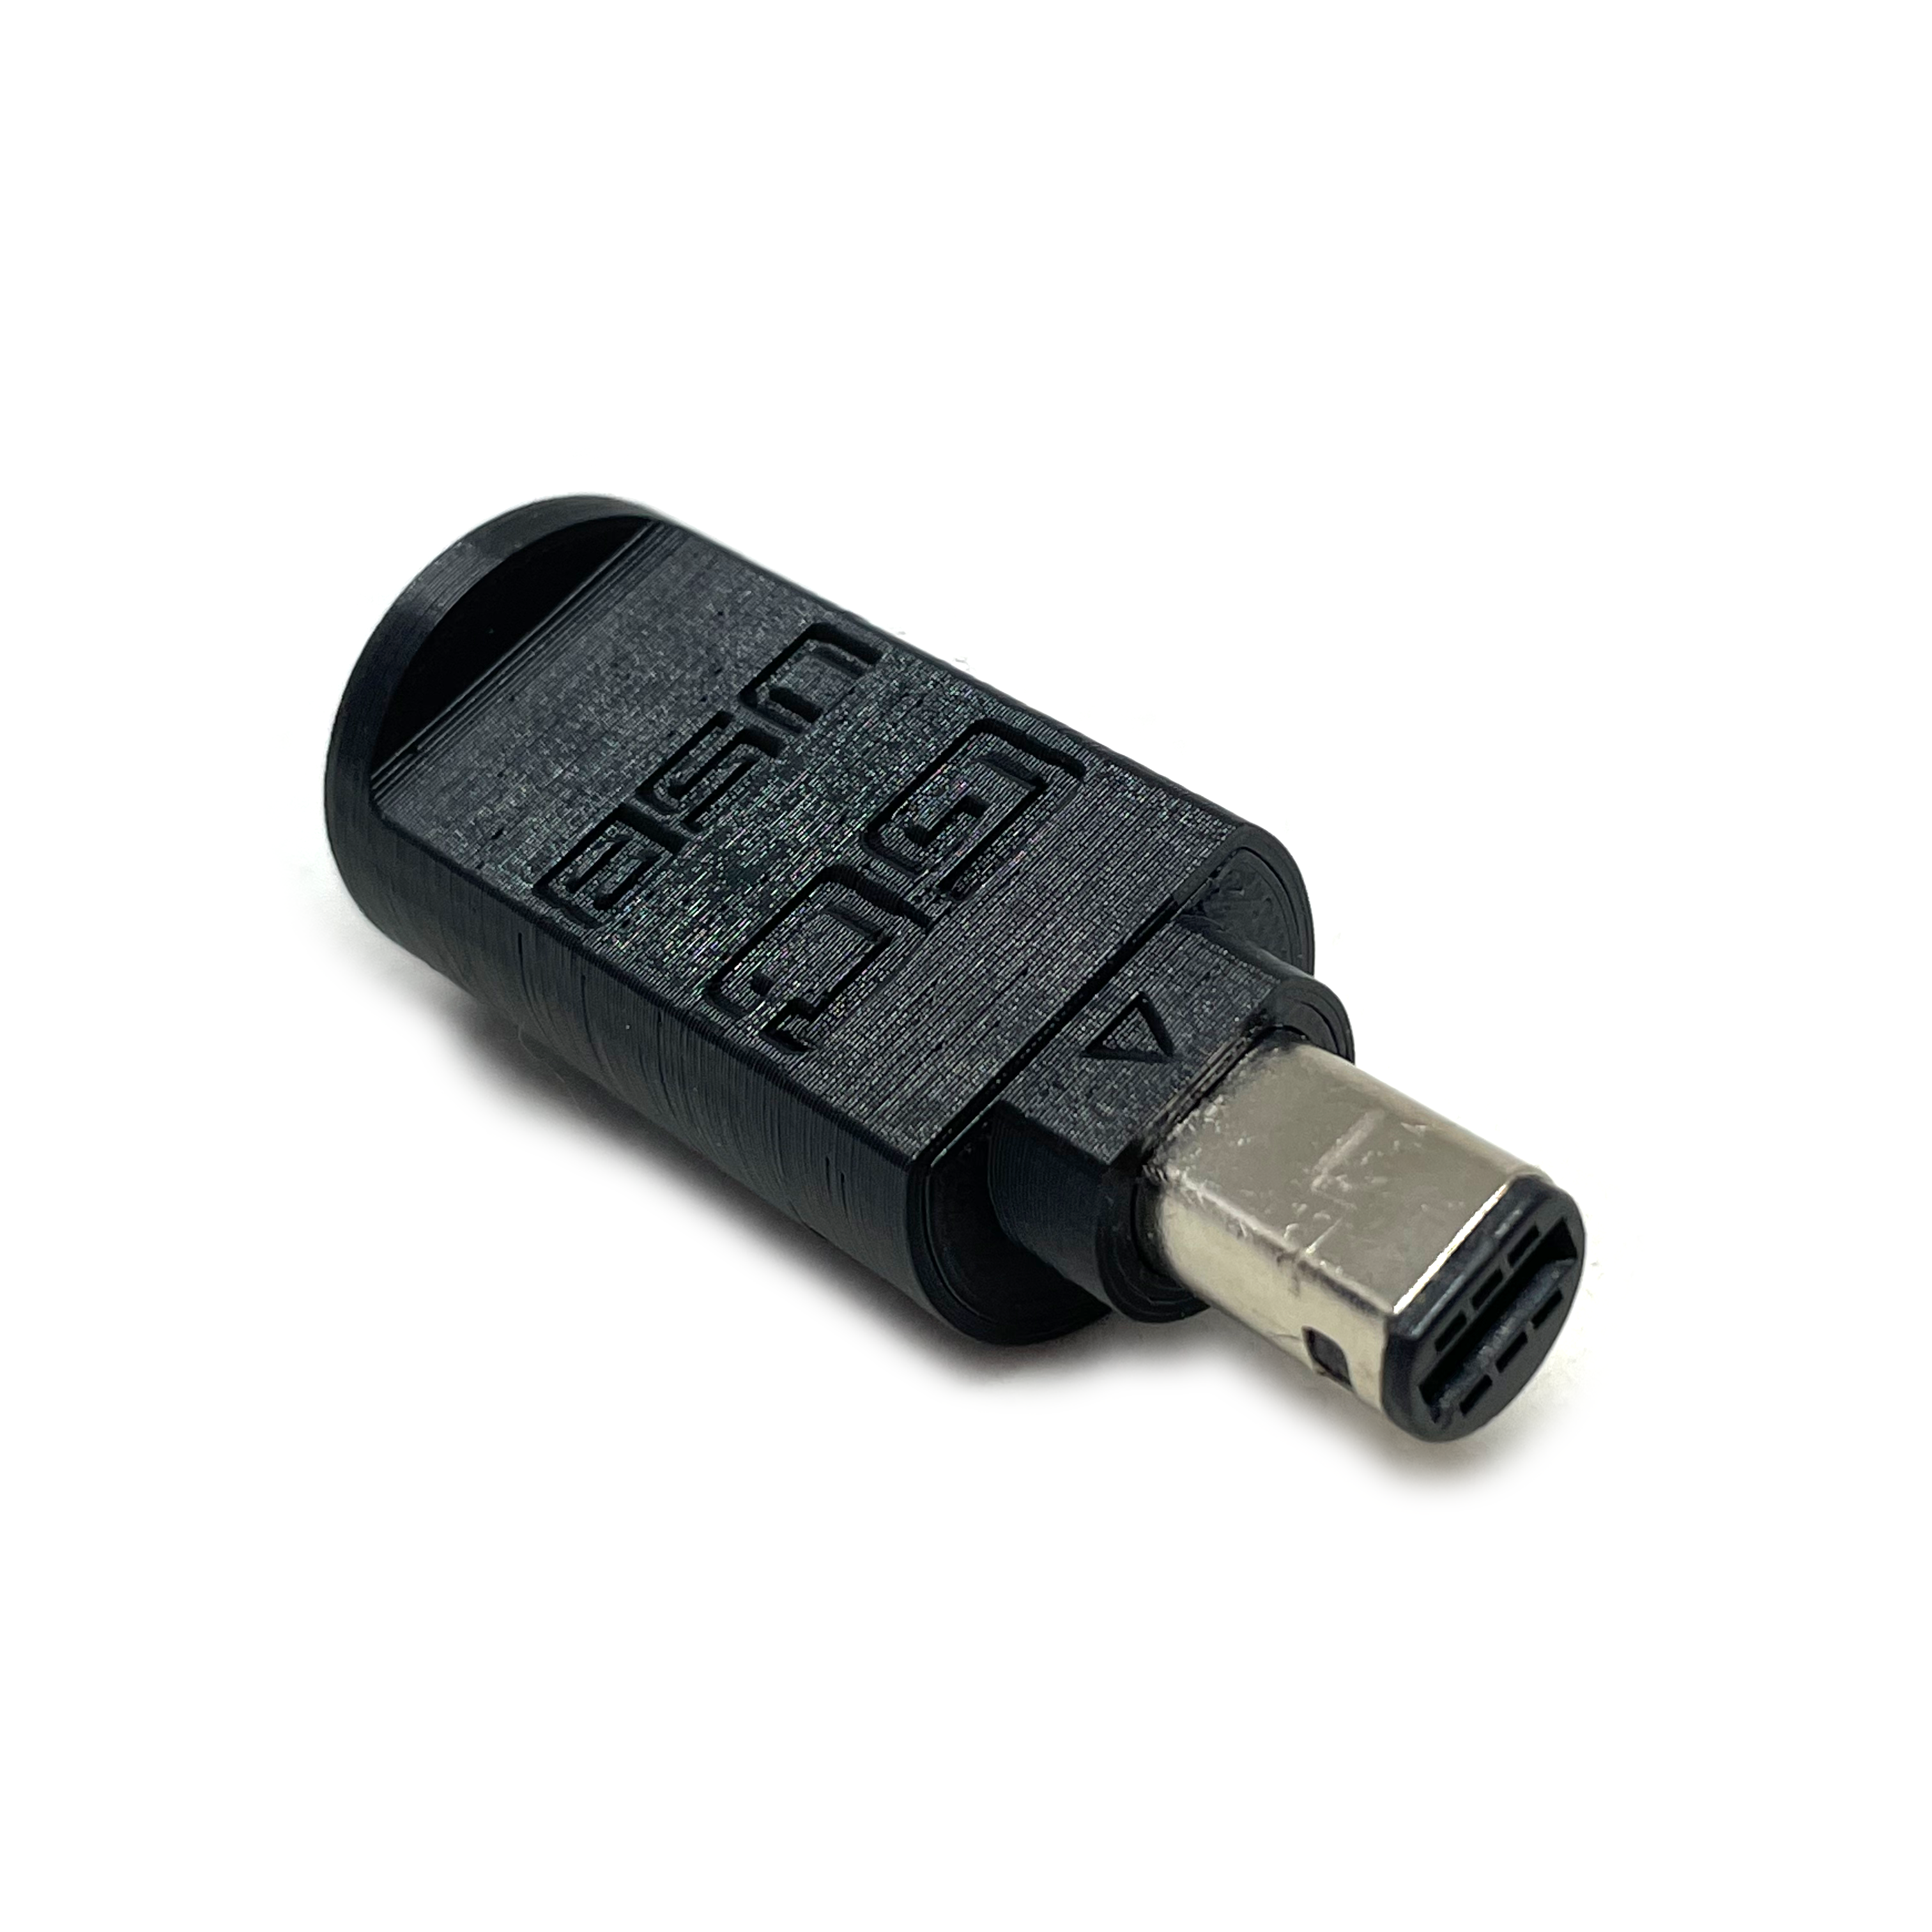 Adaptador de joystick de Gamecube a USB